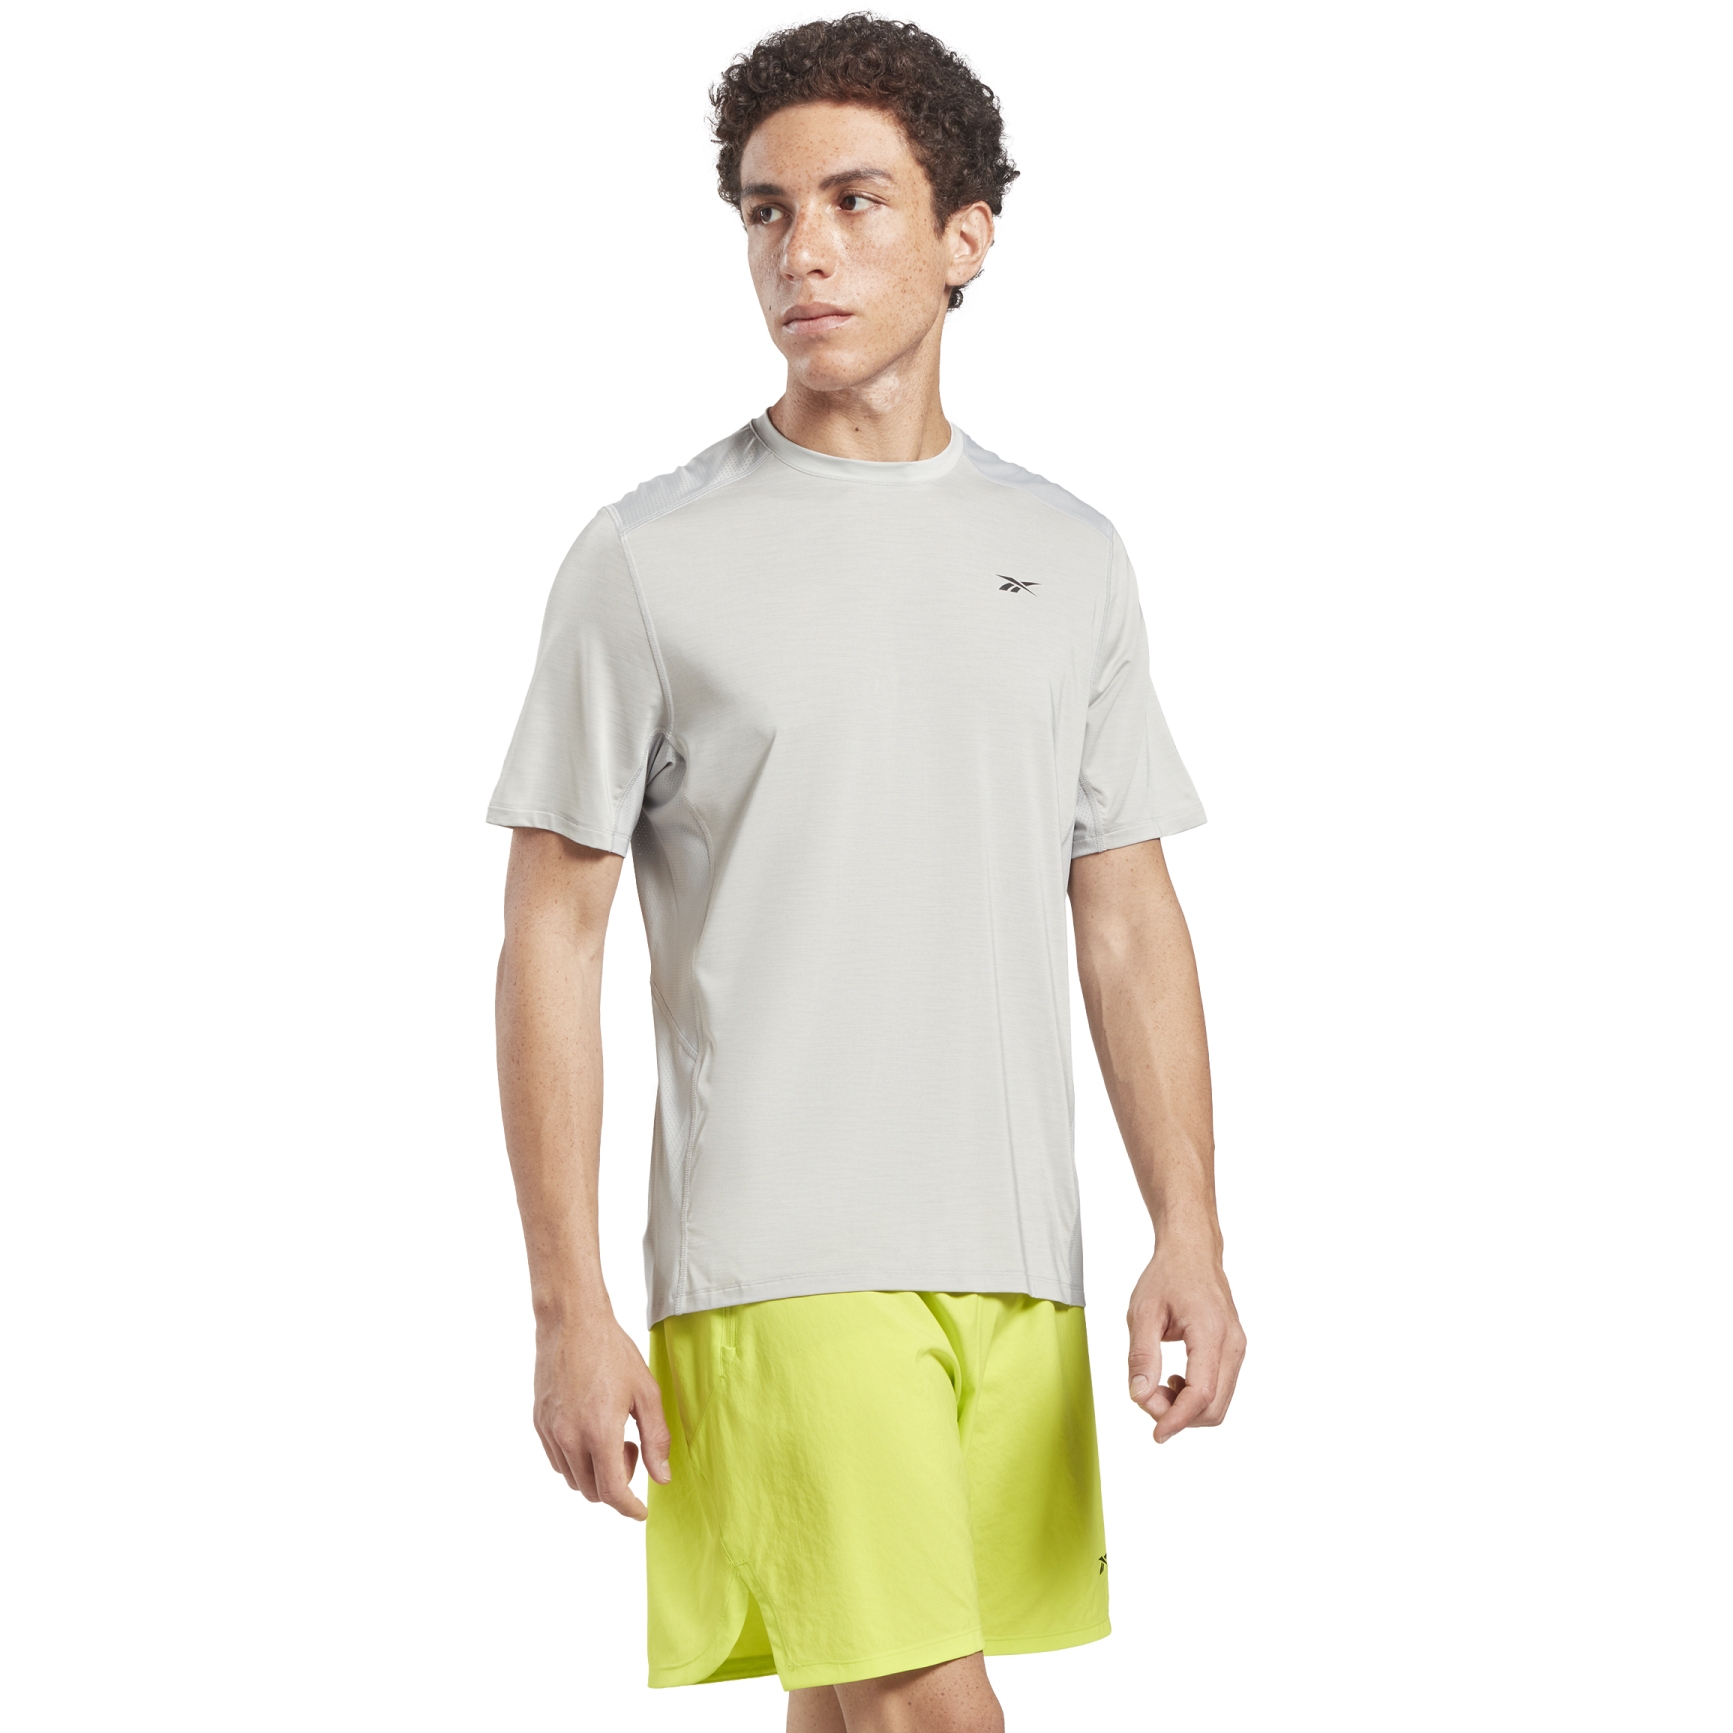 Produktbild von Reebok TS AC Solid Athlete T-Shirt Herren - pure grey